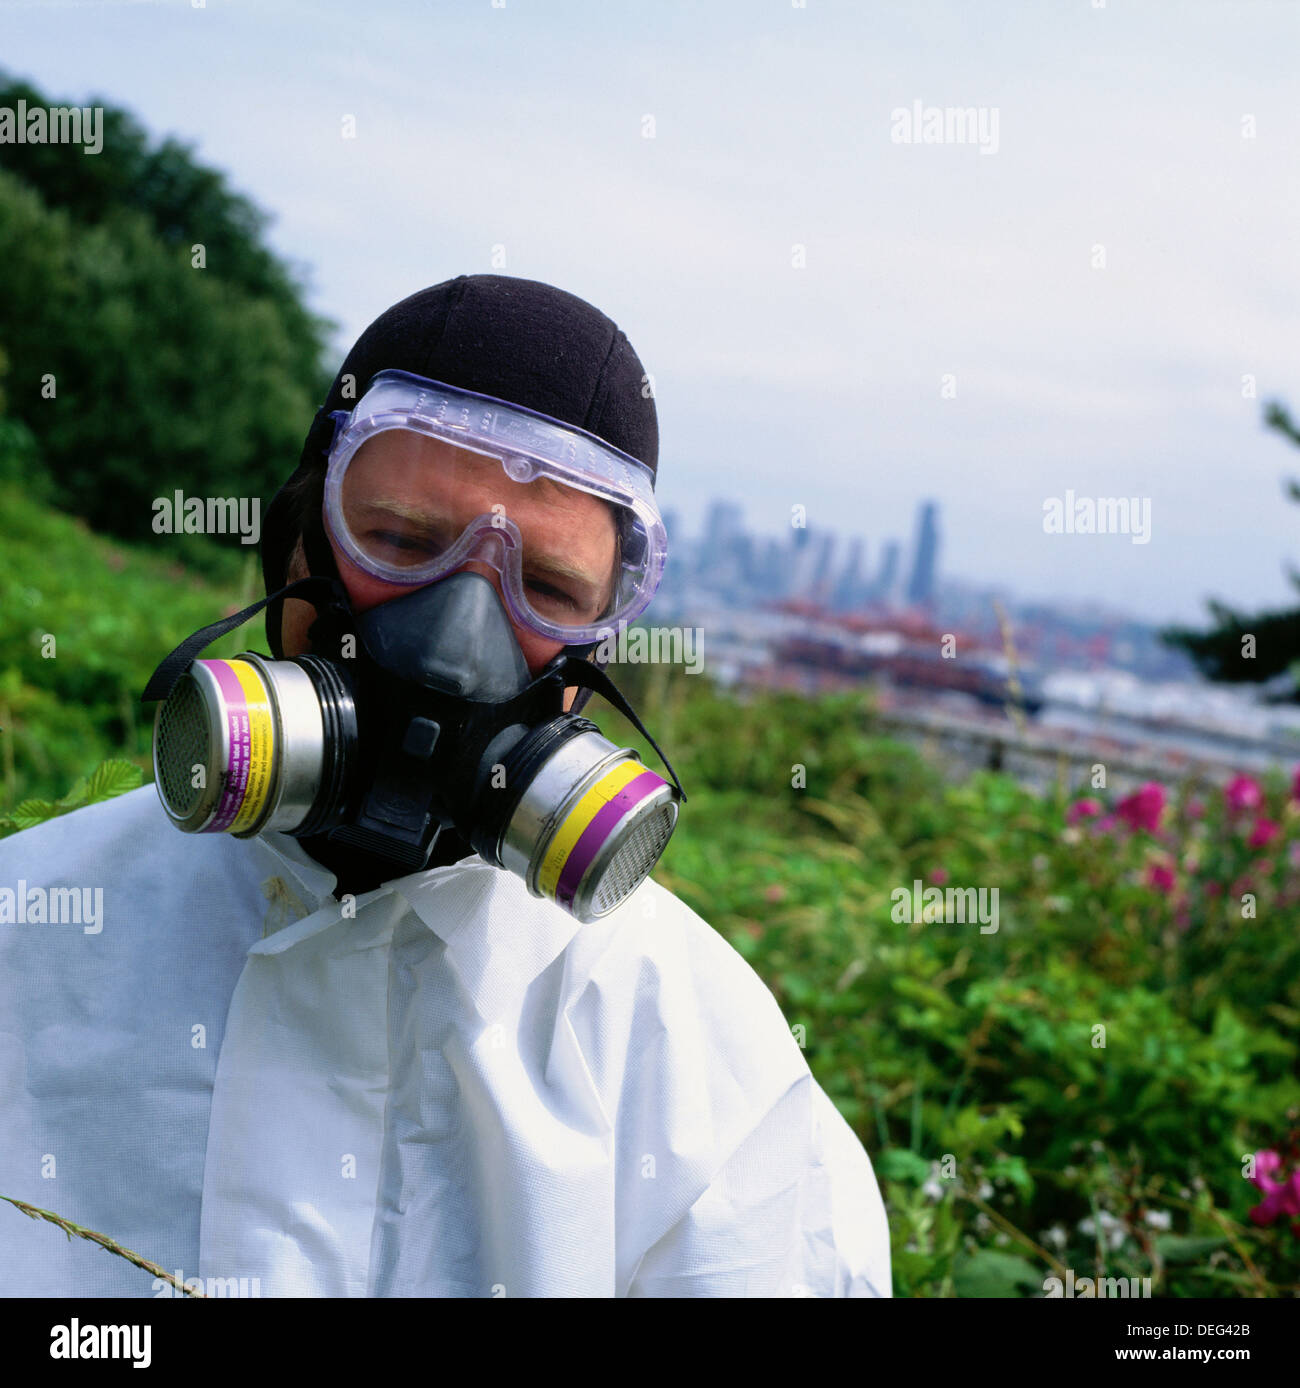 Mann trägt eine Atemmaske für organische Dämpfe wie Asbest, Staub und  Feinstaub Aerosole Stockfotografie - Alamy